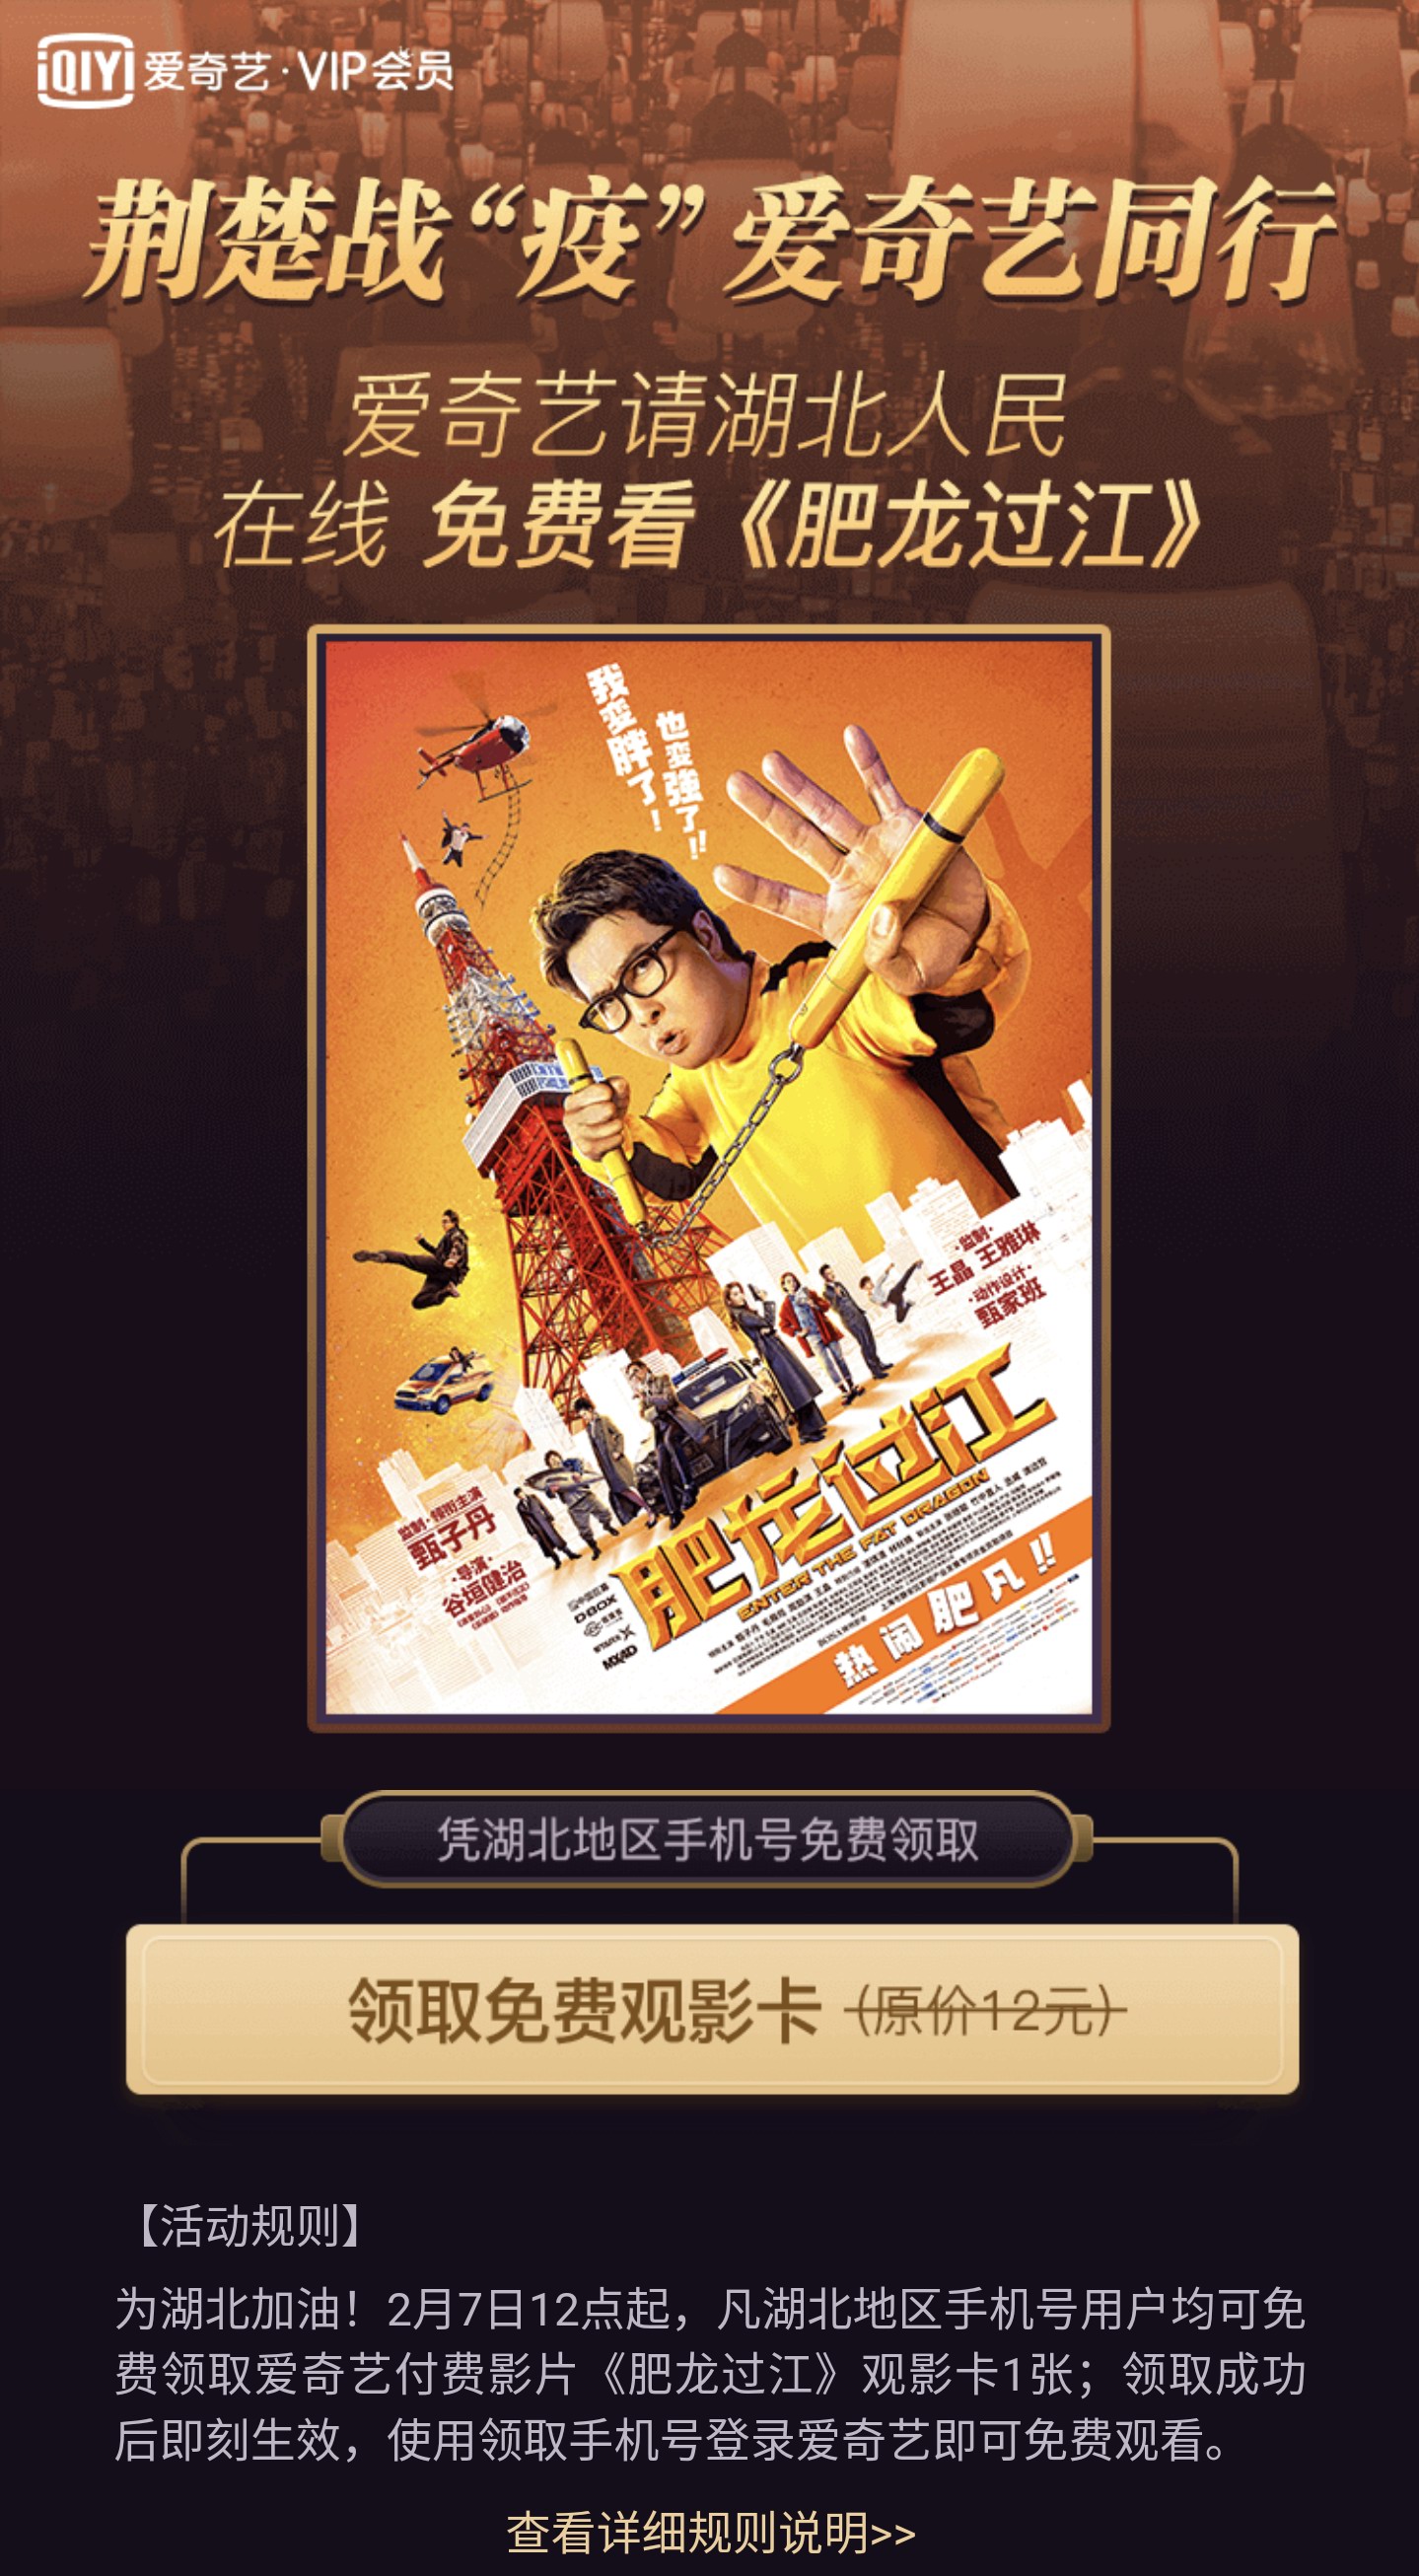 电影《肥龙过江》上线爱奇艺 湖北省用户可免费观看